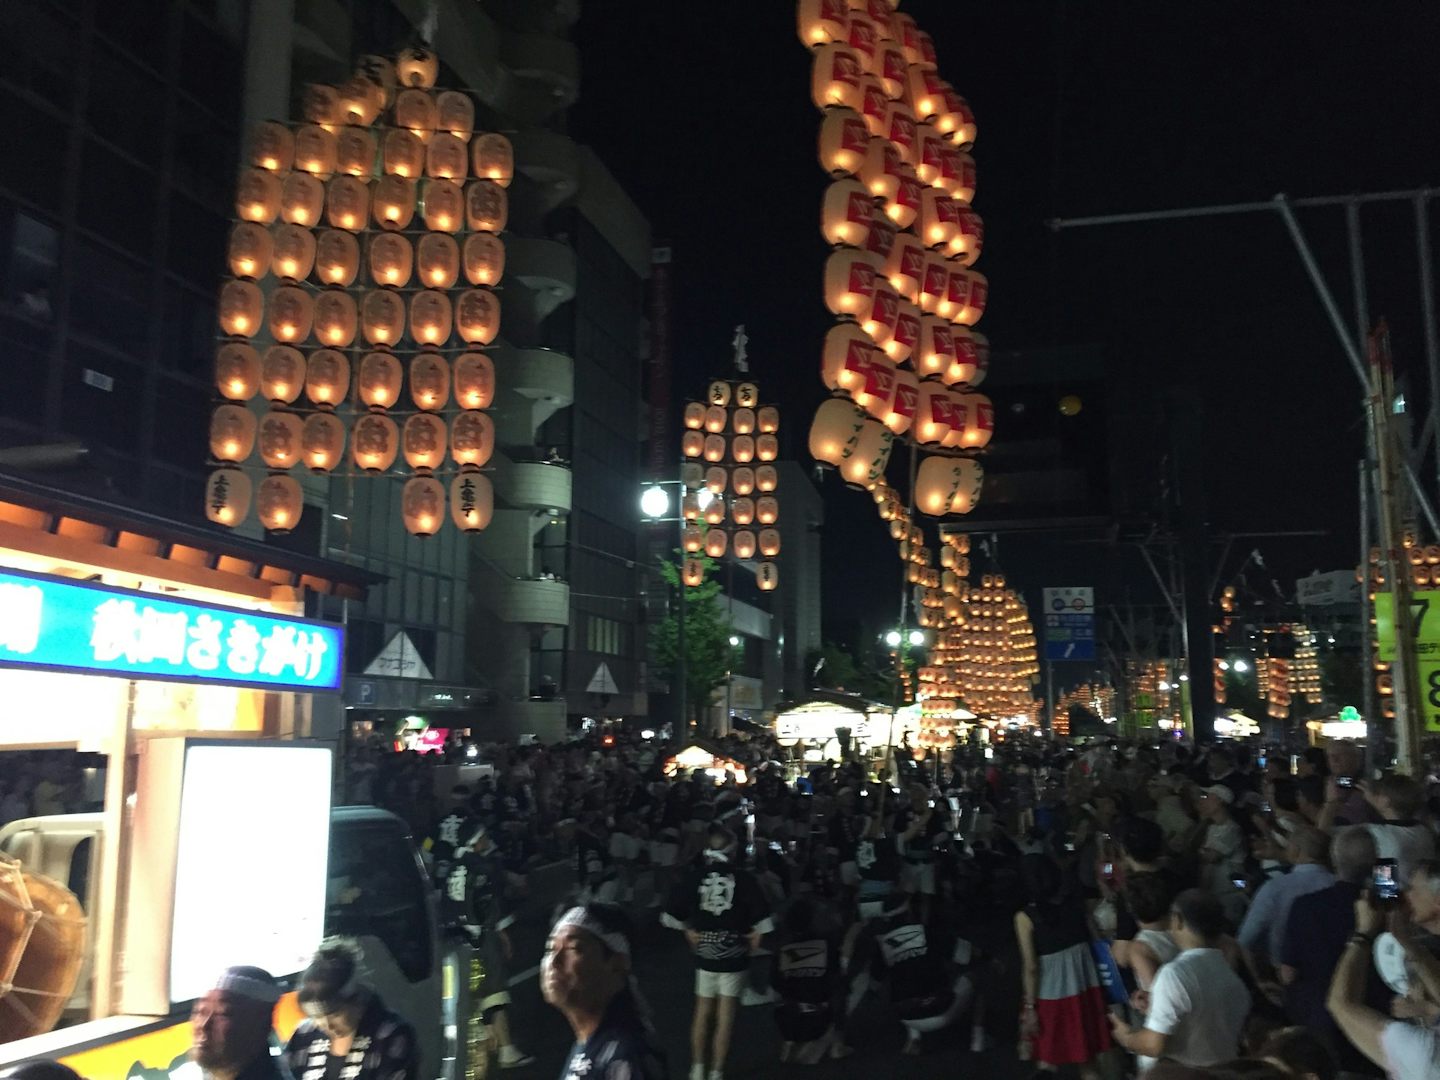 Kanto (Lantern) Festival in Akita